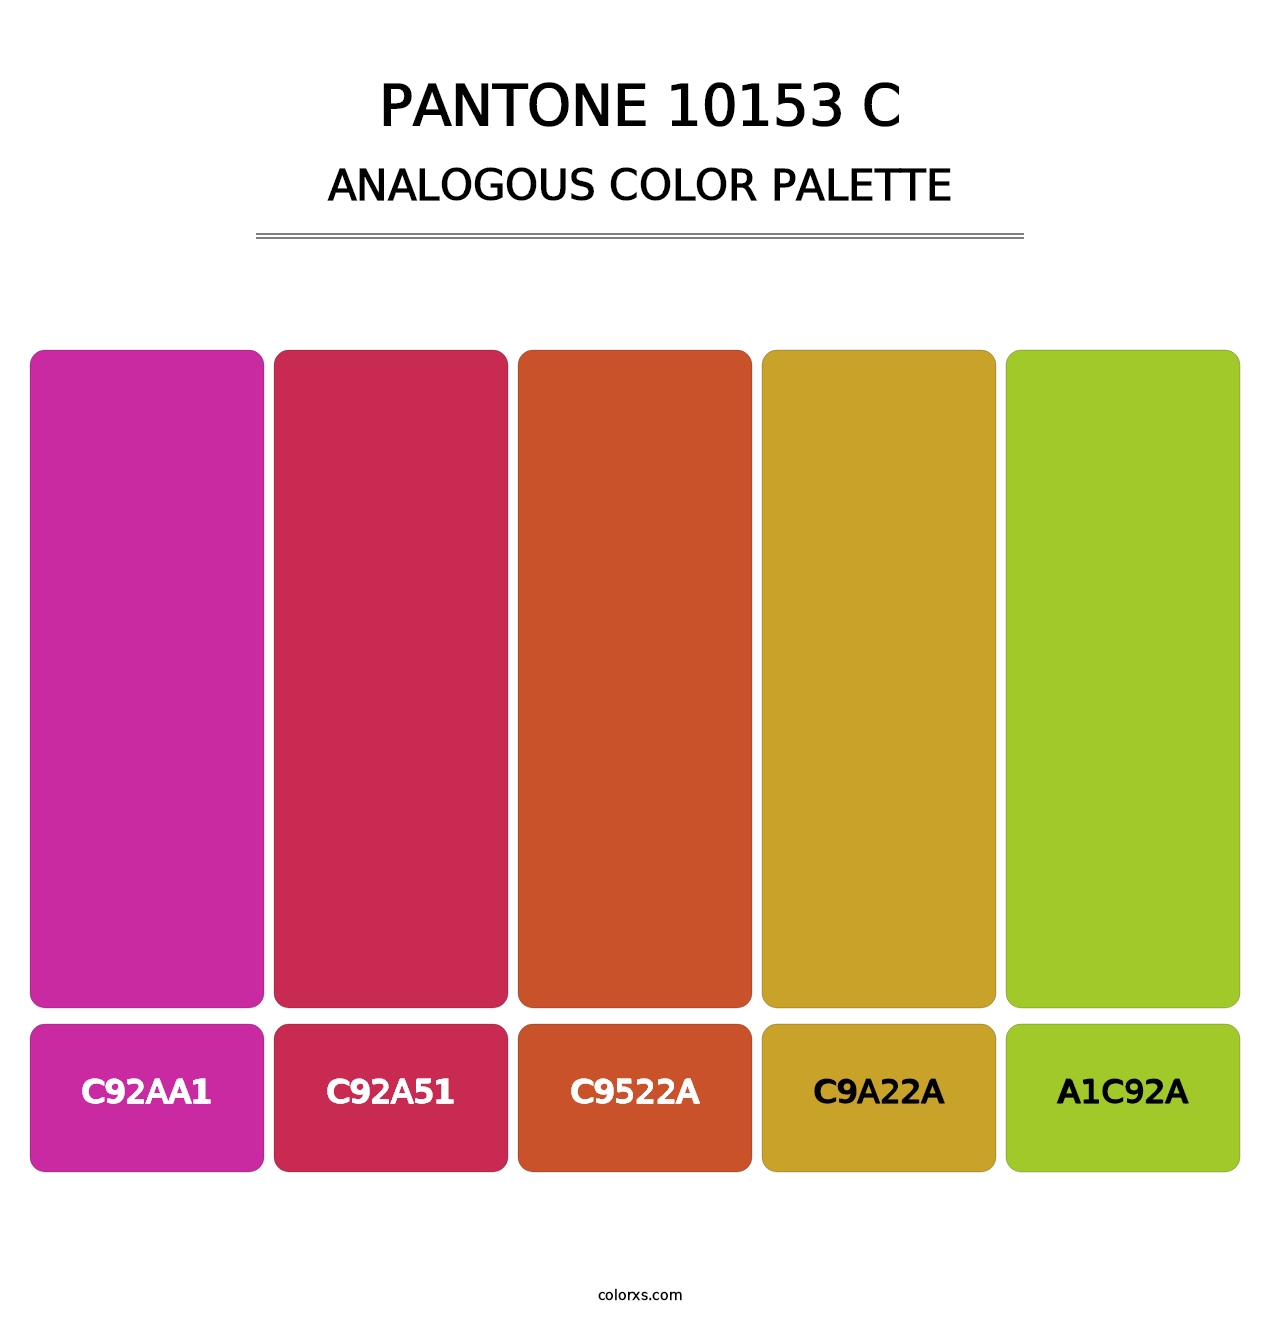 PANTONE 10153 C - Analogous Color Palette